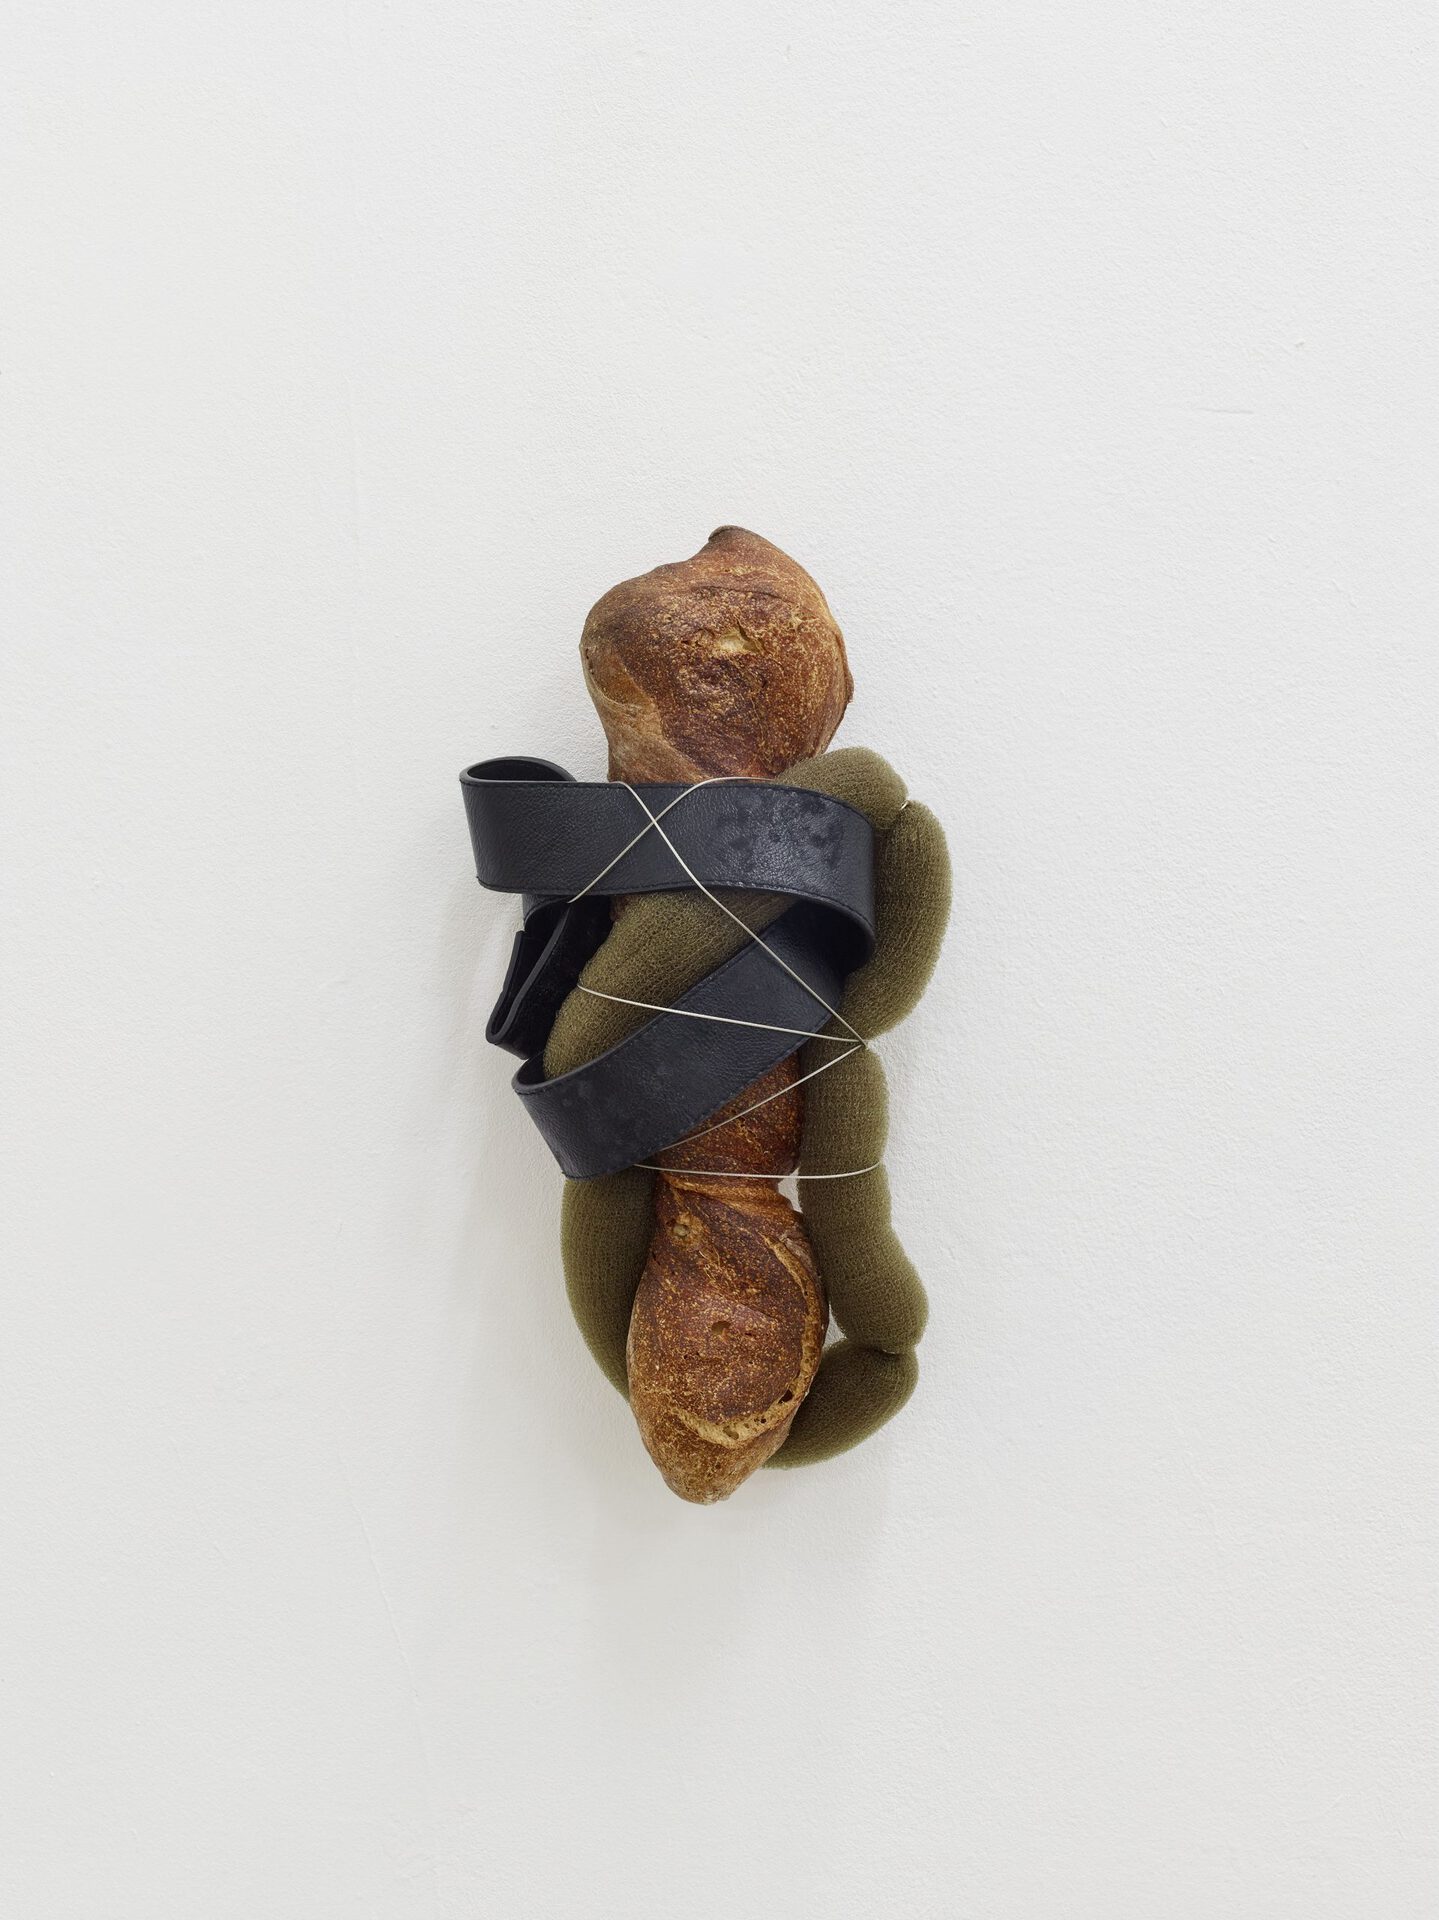 Jacques Bonnard (*1954), sans titre, 2016, pain, simili cuir, fil métallique, mousse synthétique, 42 × 20 × 13 cm